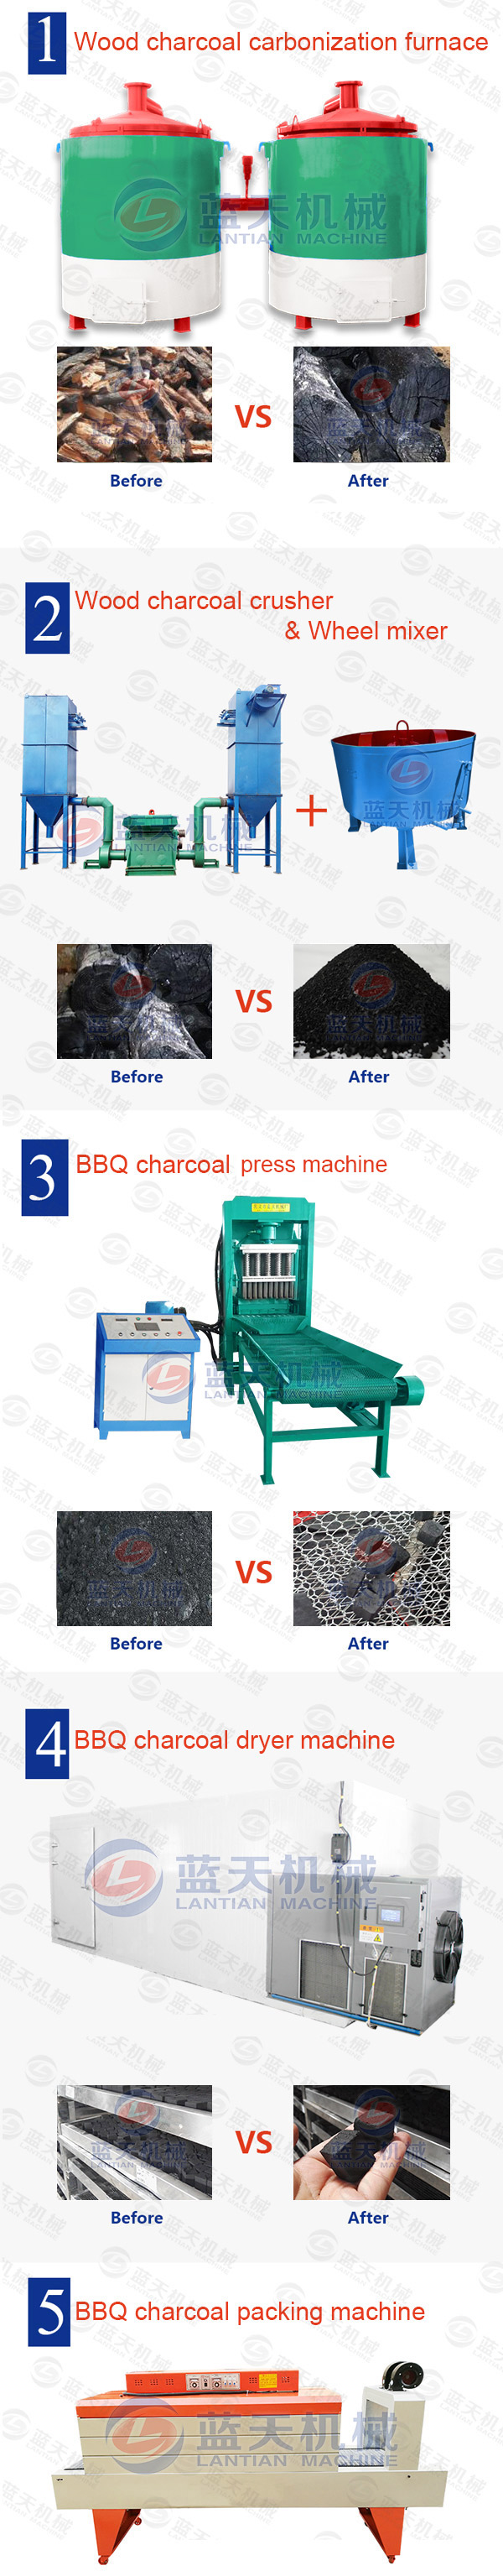 BBQ Charcoal Press Machine